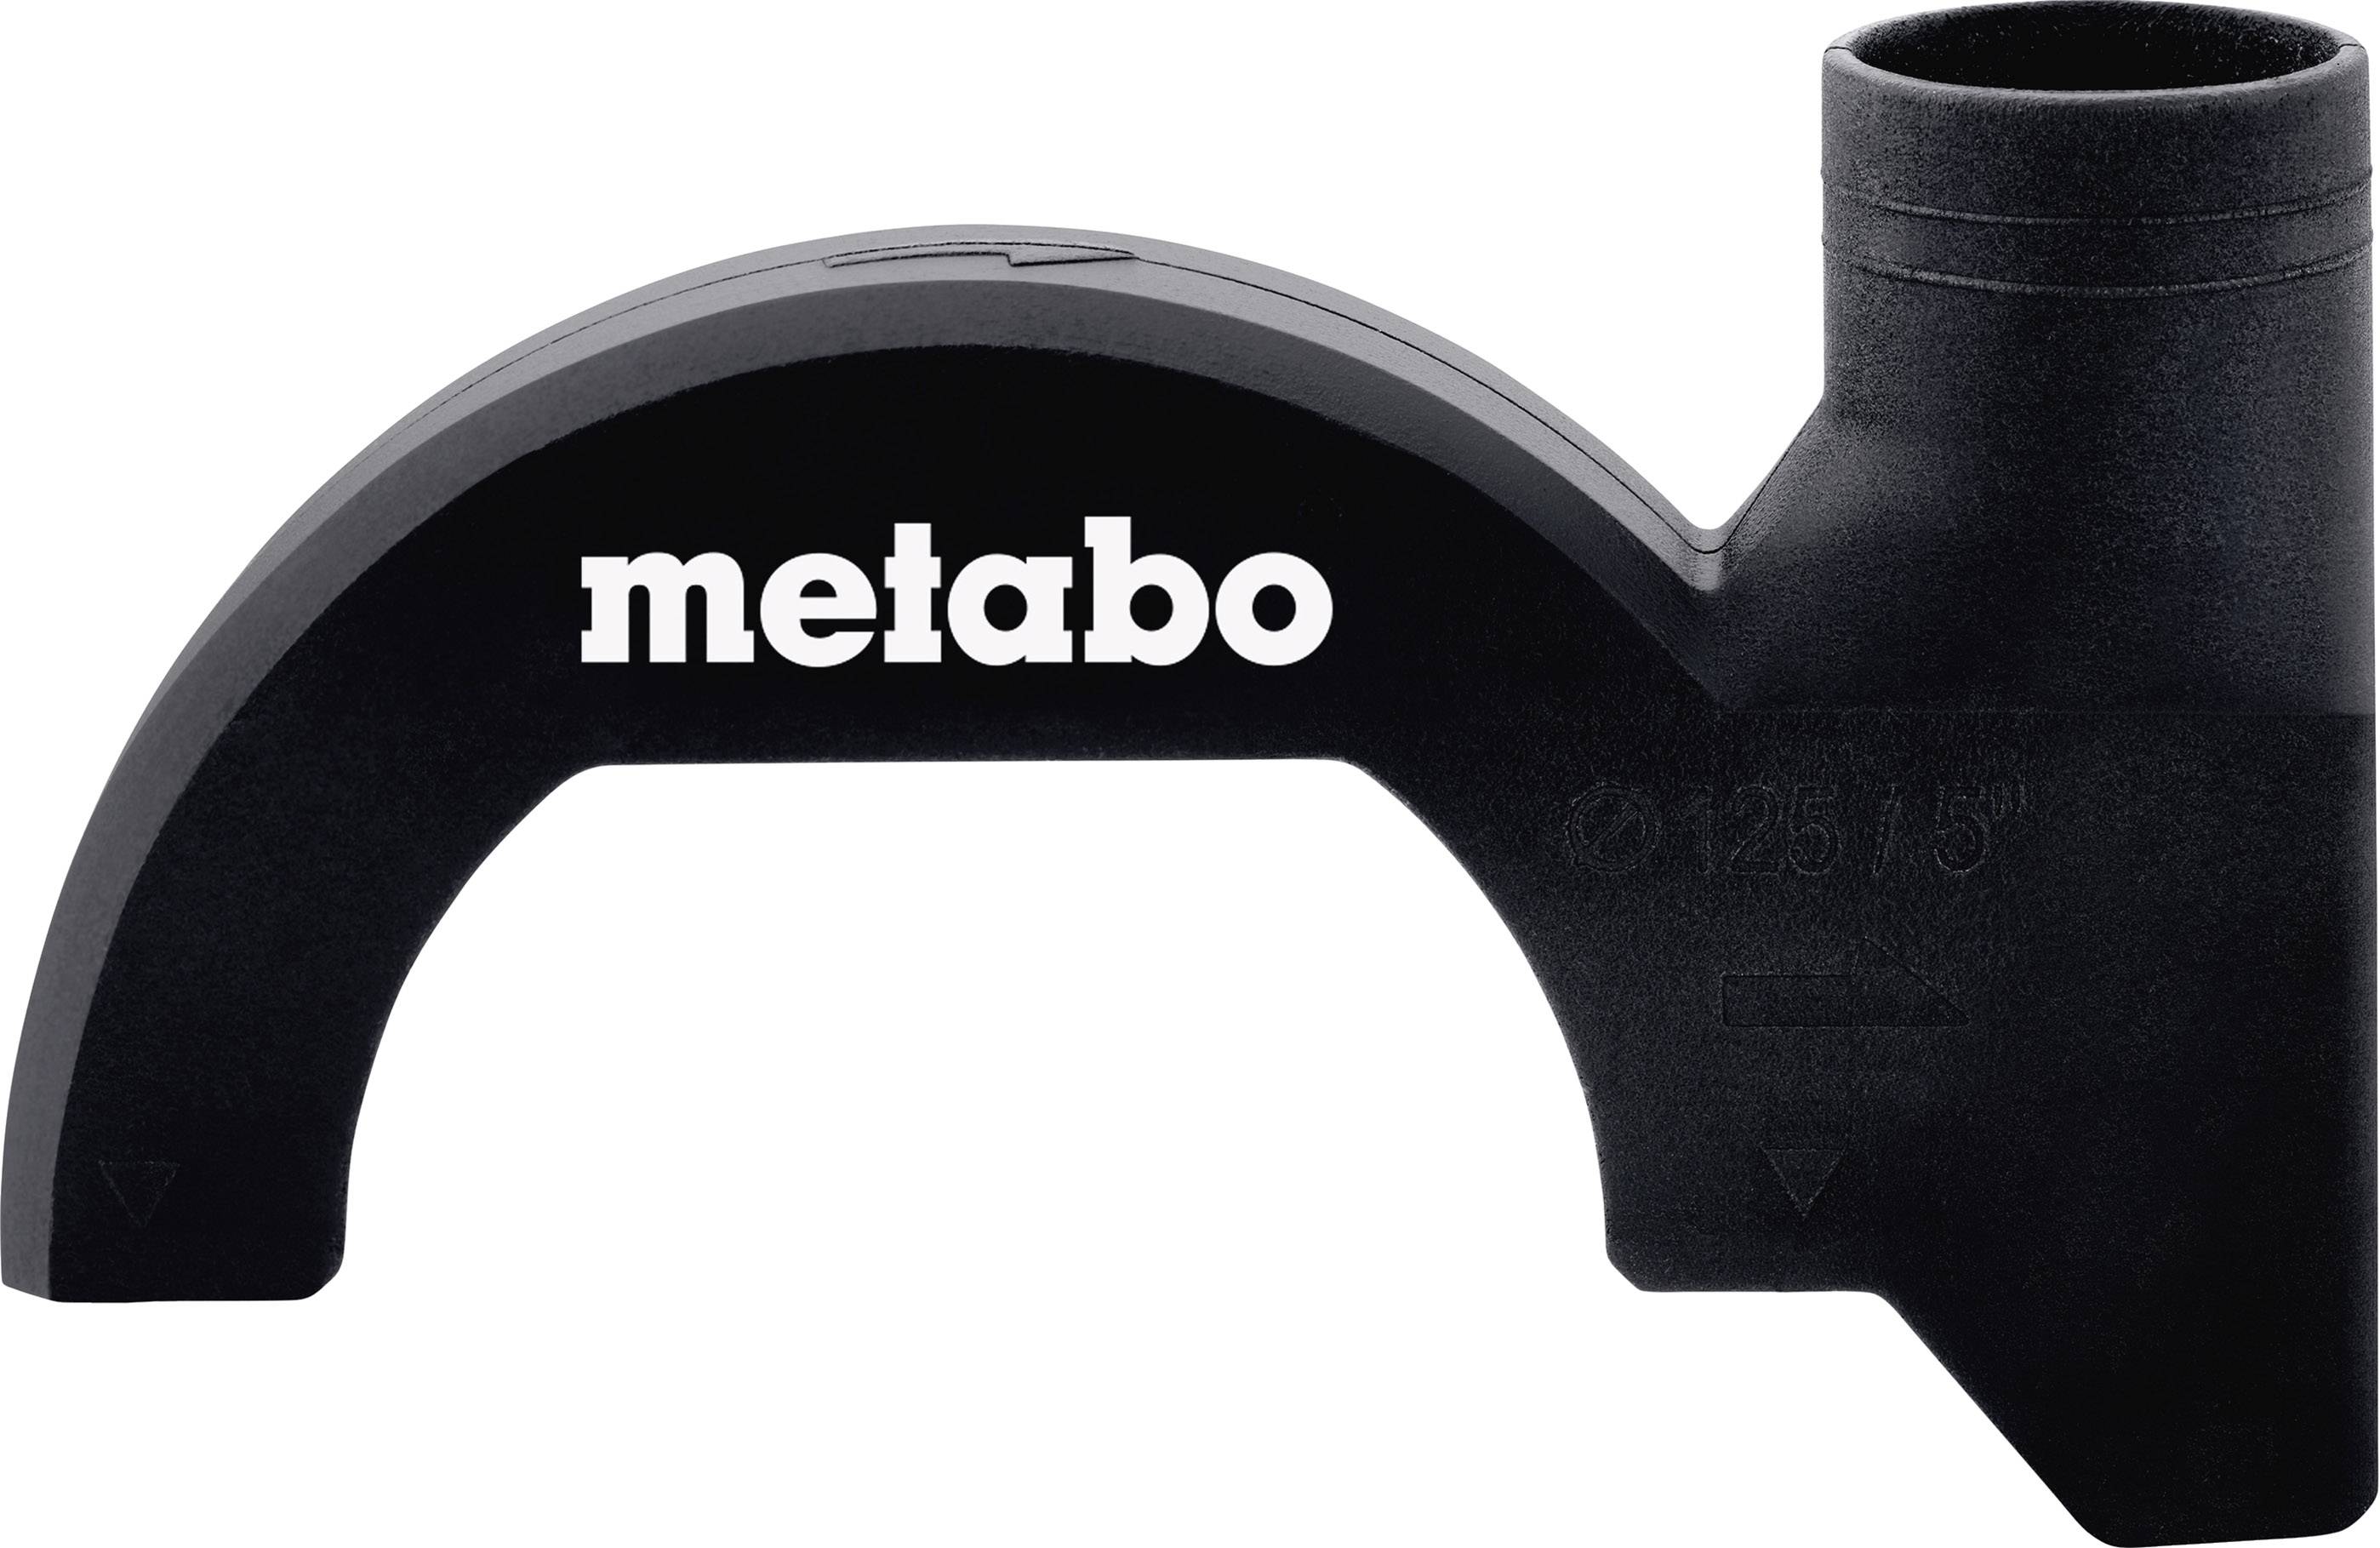 METABO Absaughauben-Clip CED 125 CLIP Metabo 630401000